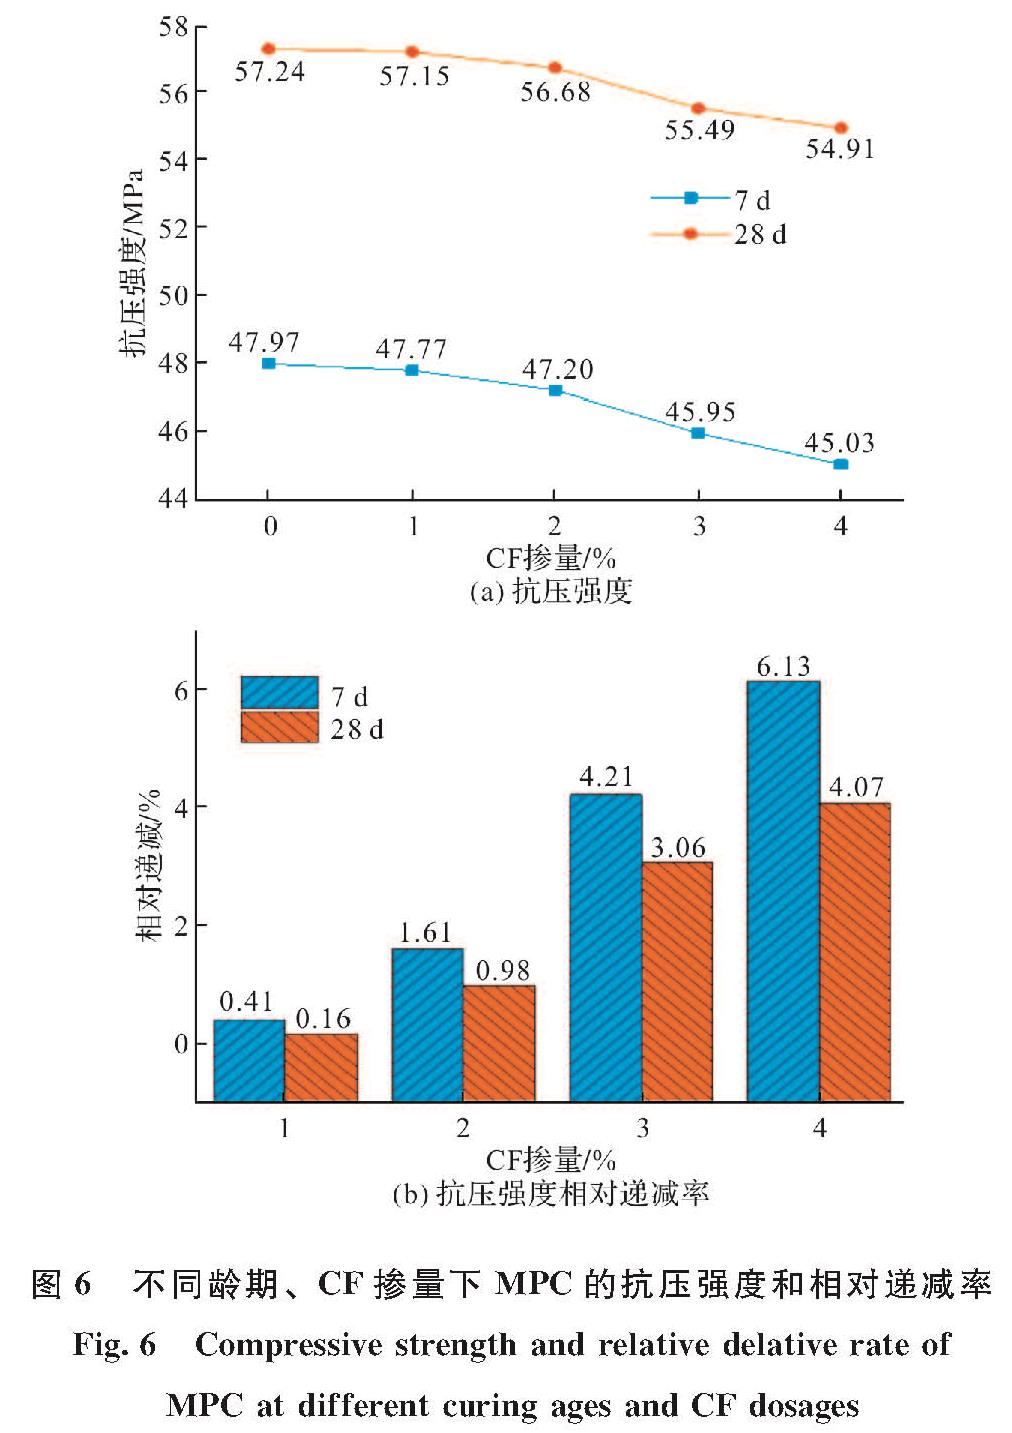 图6 不同龄期、CF掺量下MPC的抗压强度和相对递减率<br/>Fig.6 Compressive strength and relative delative rate of MPC at different curing ages and CF dosages